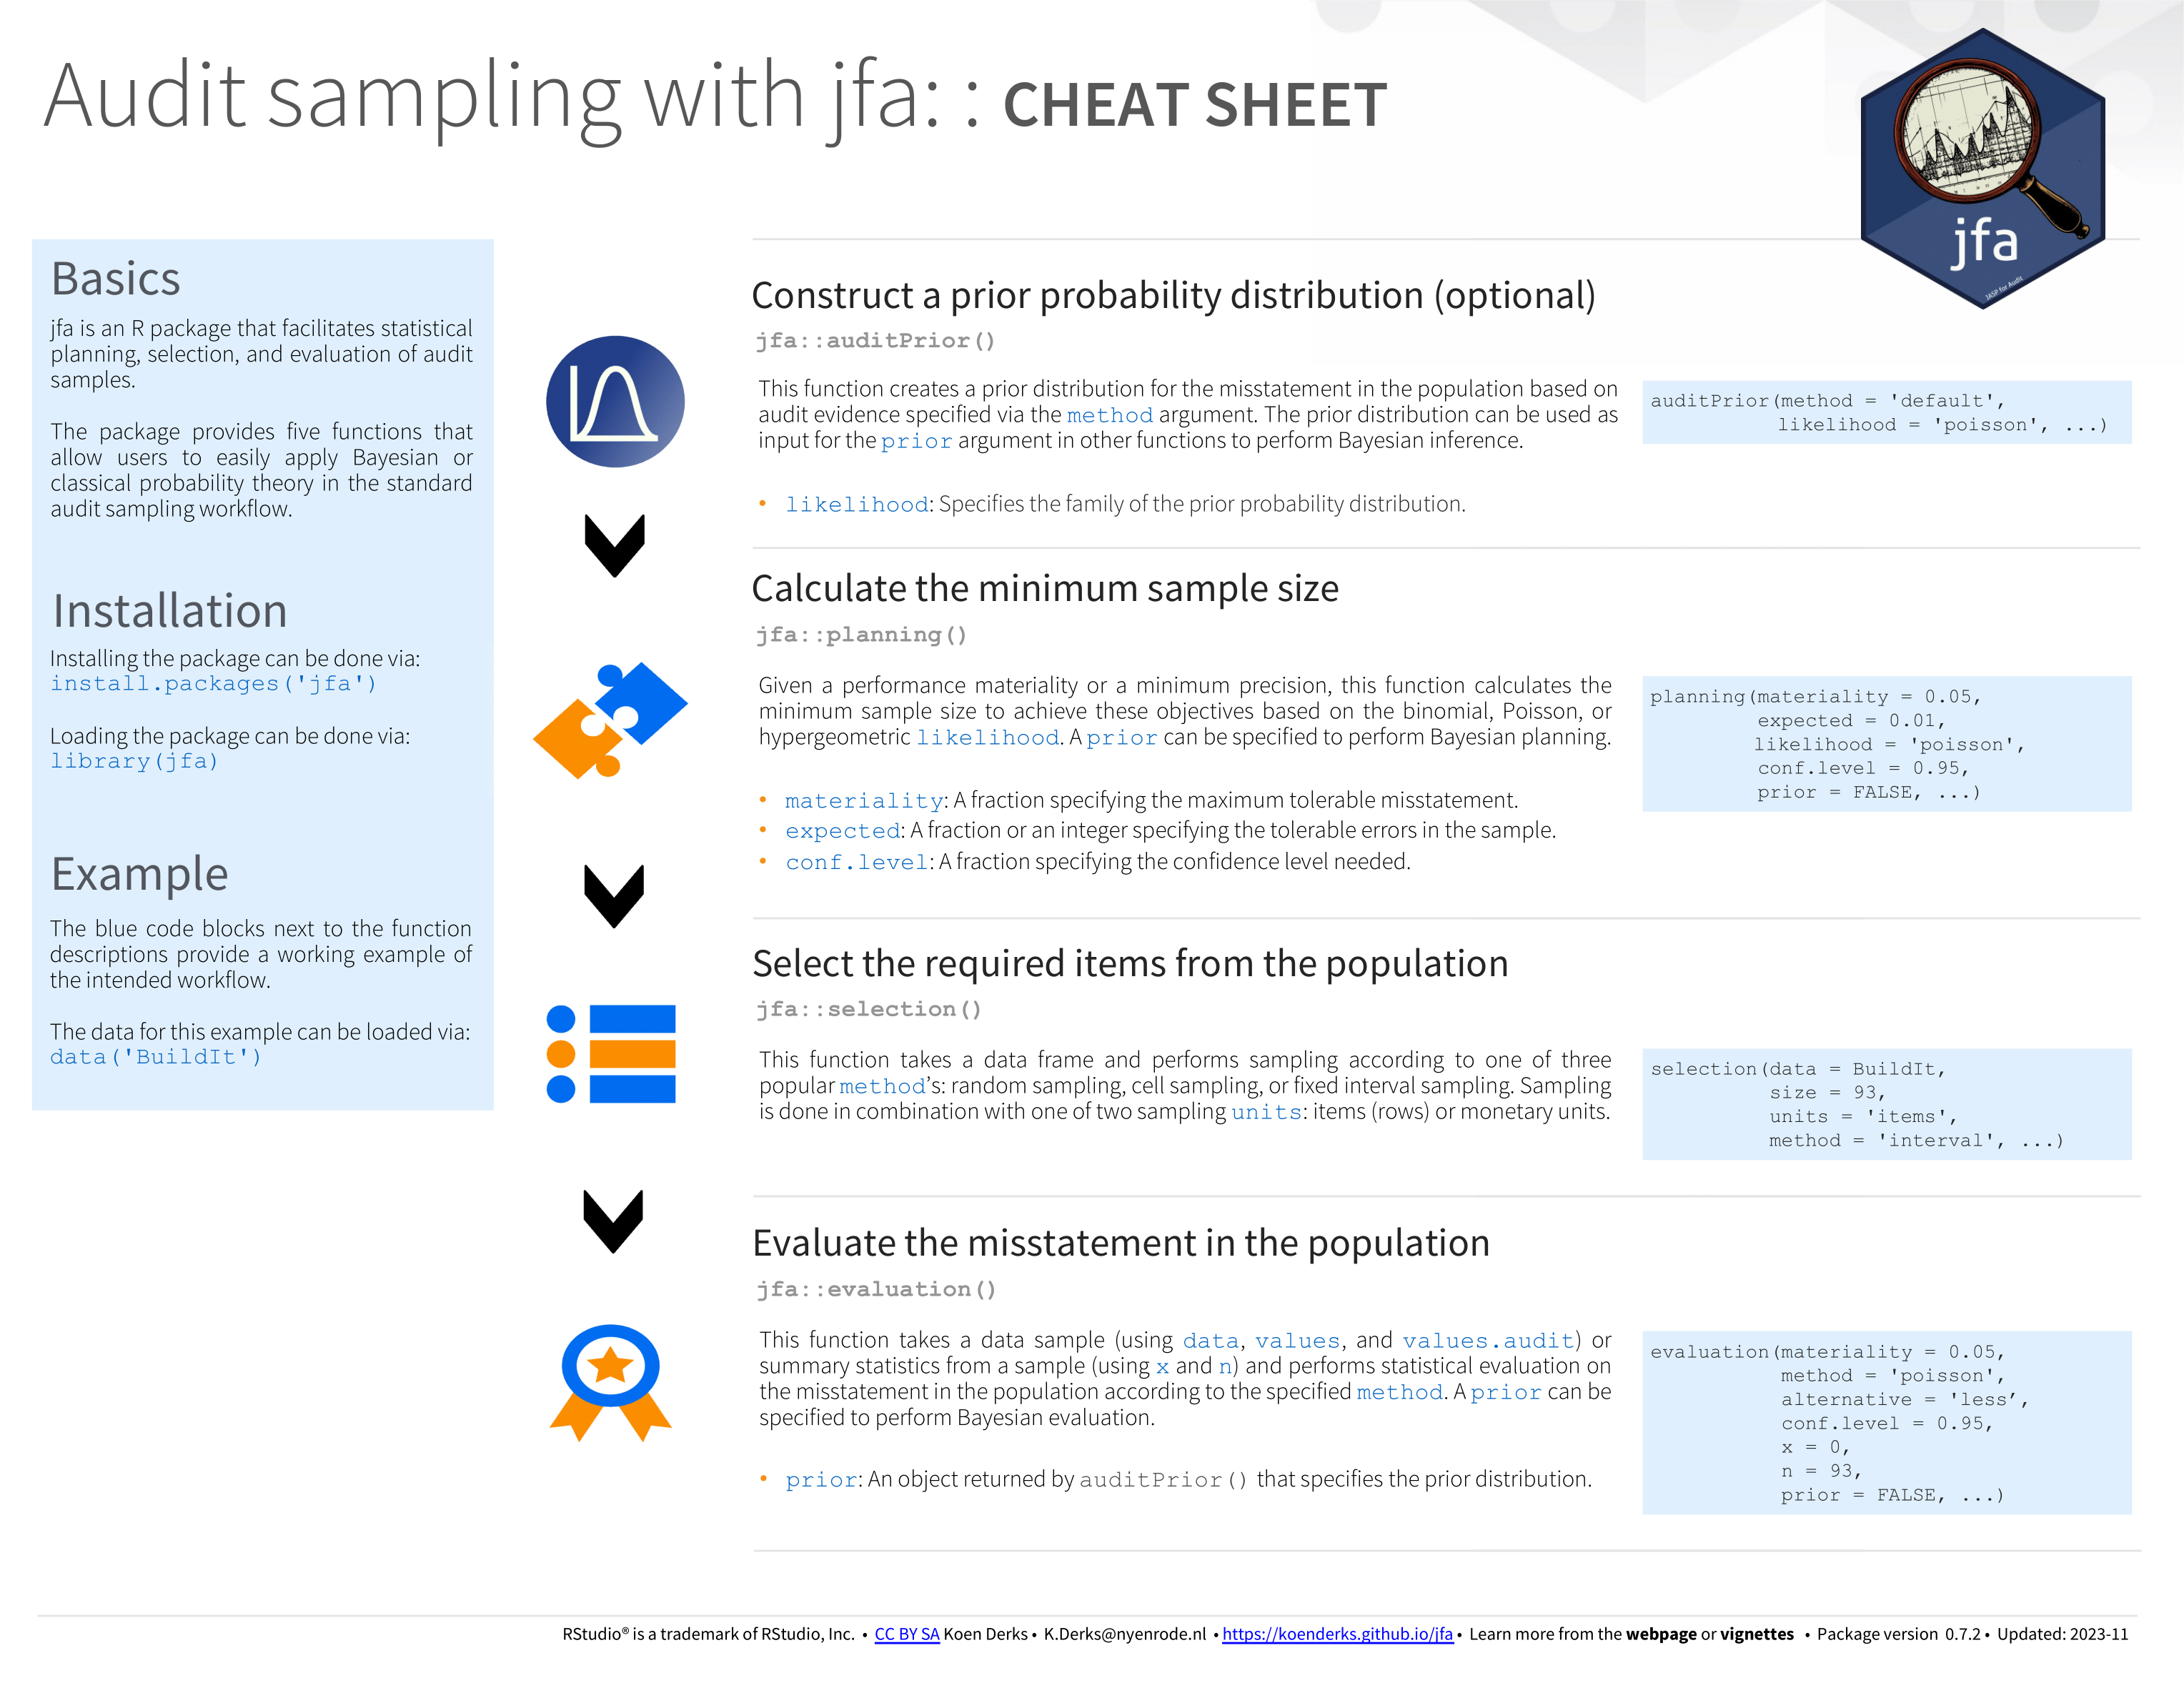 cheatsheet-sampling